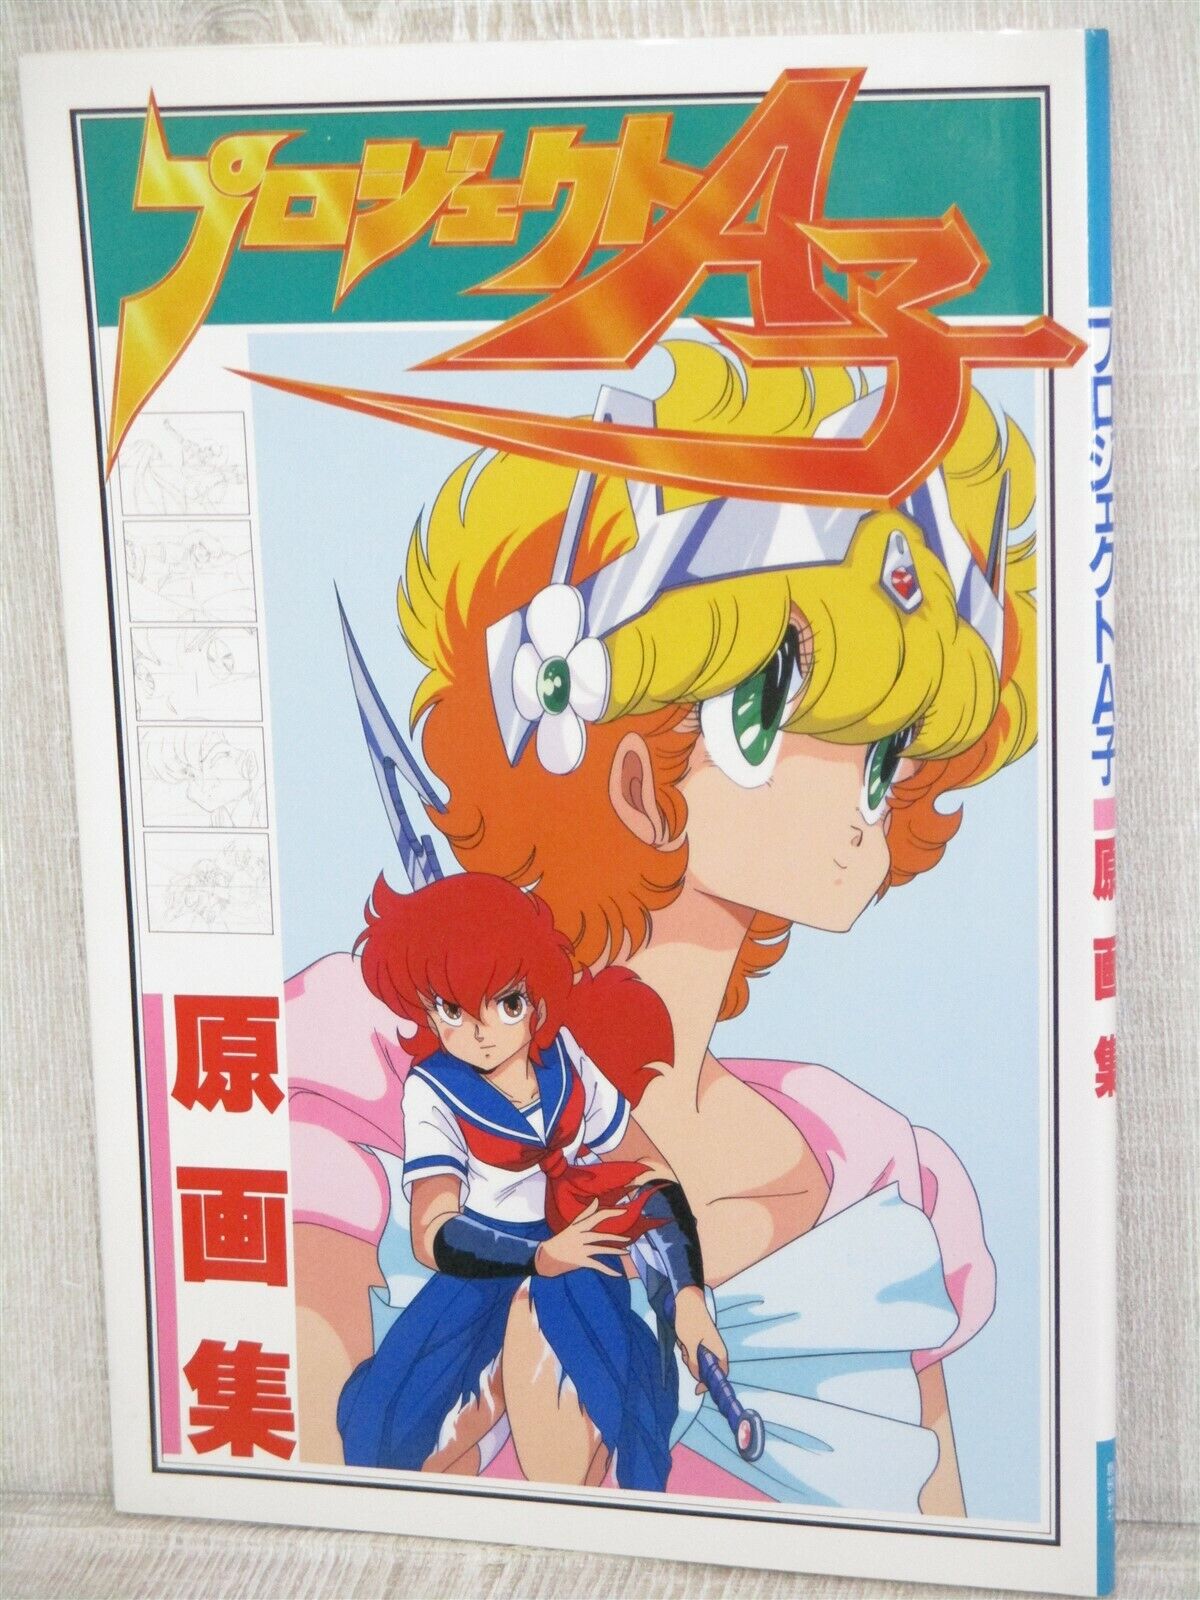 PROJECT A KO Gengashu Art Works Fan Book 1986 Japan